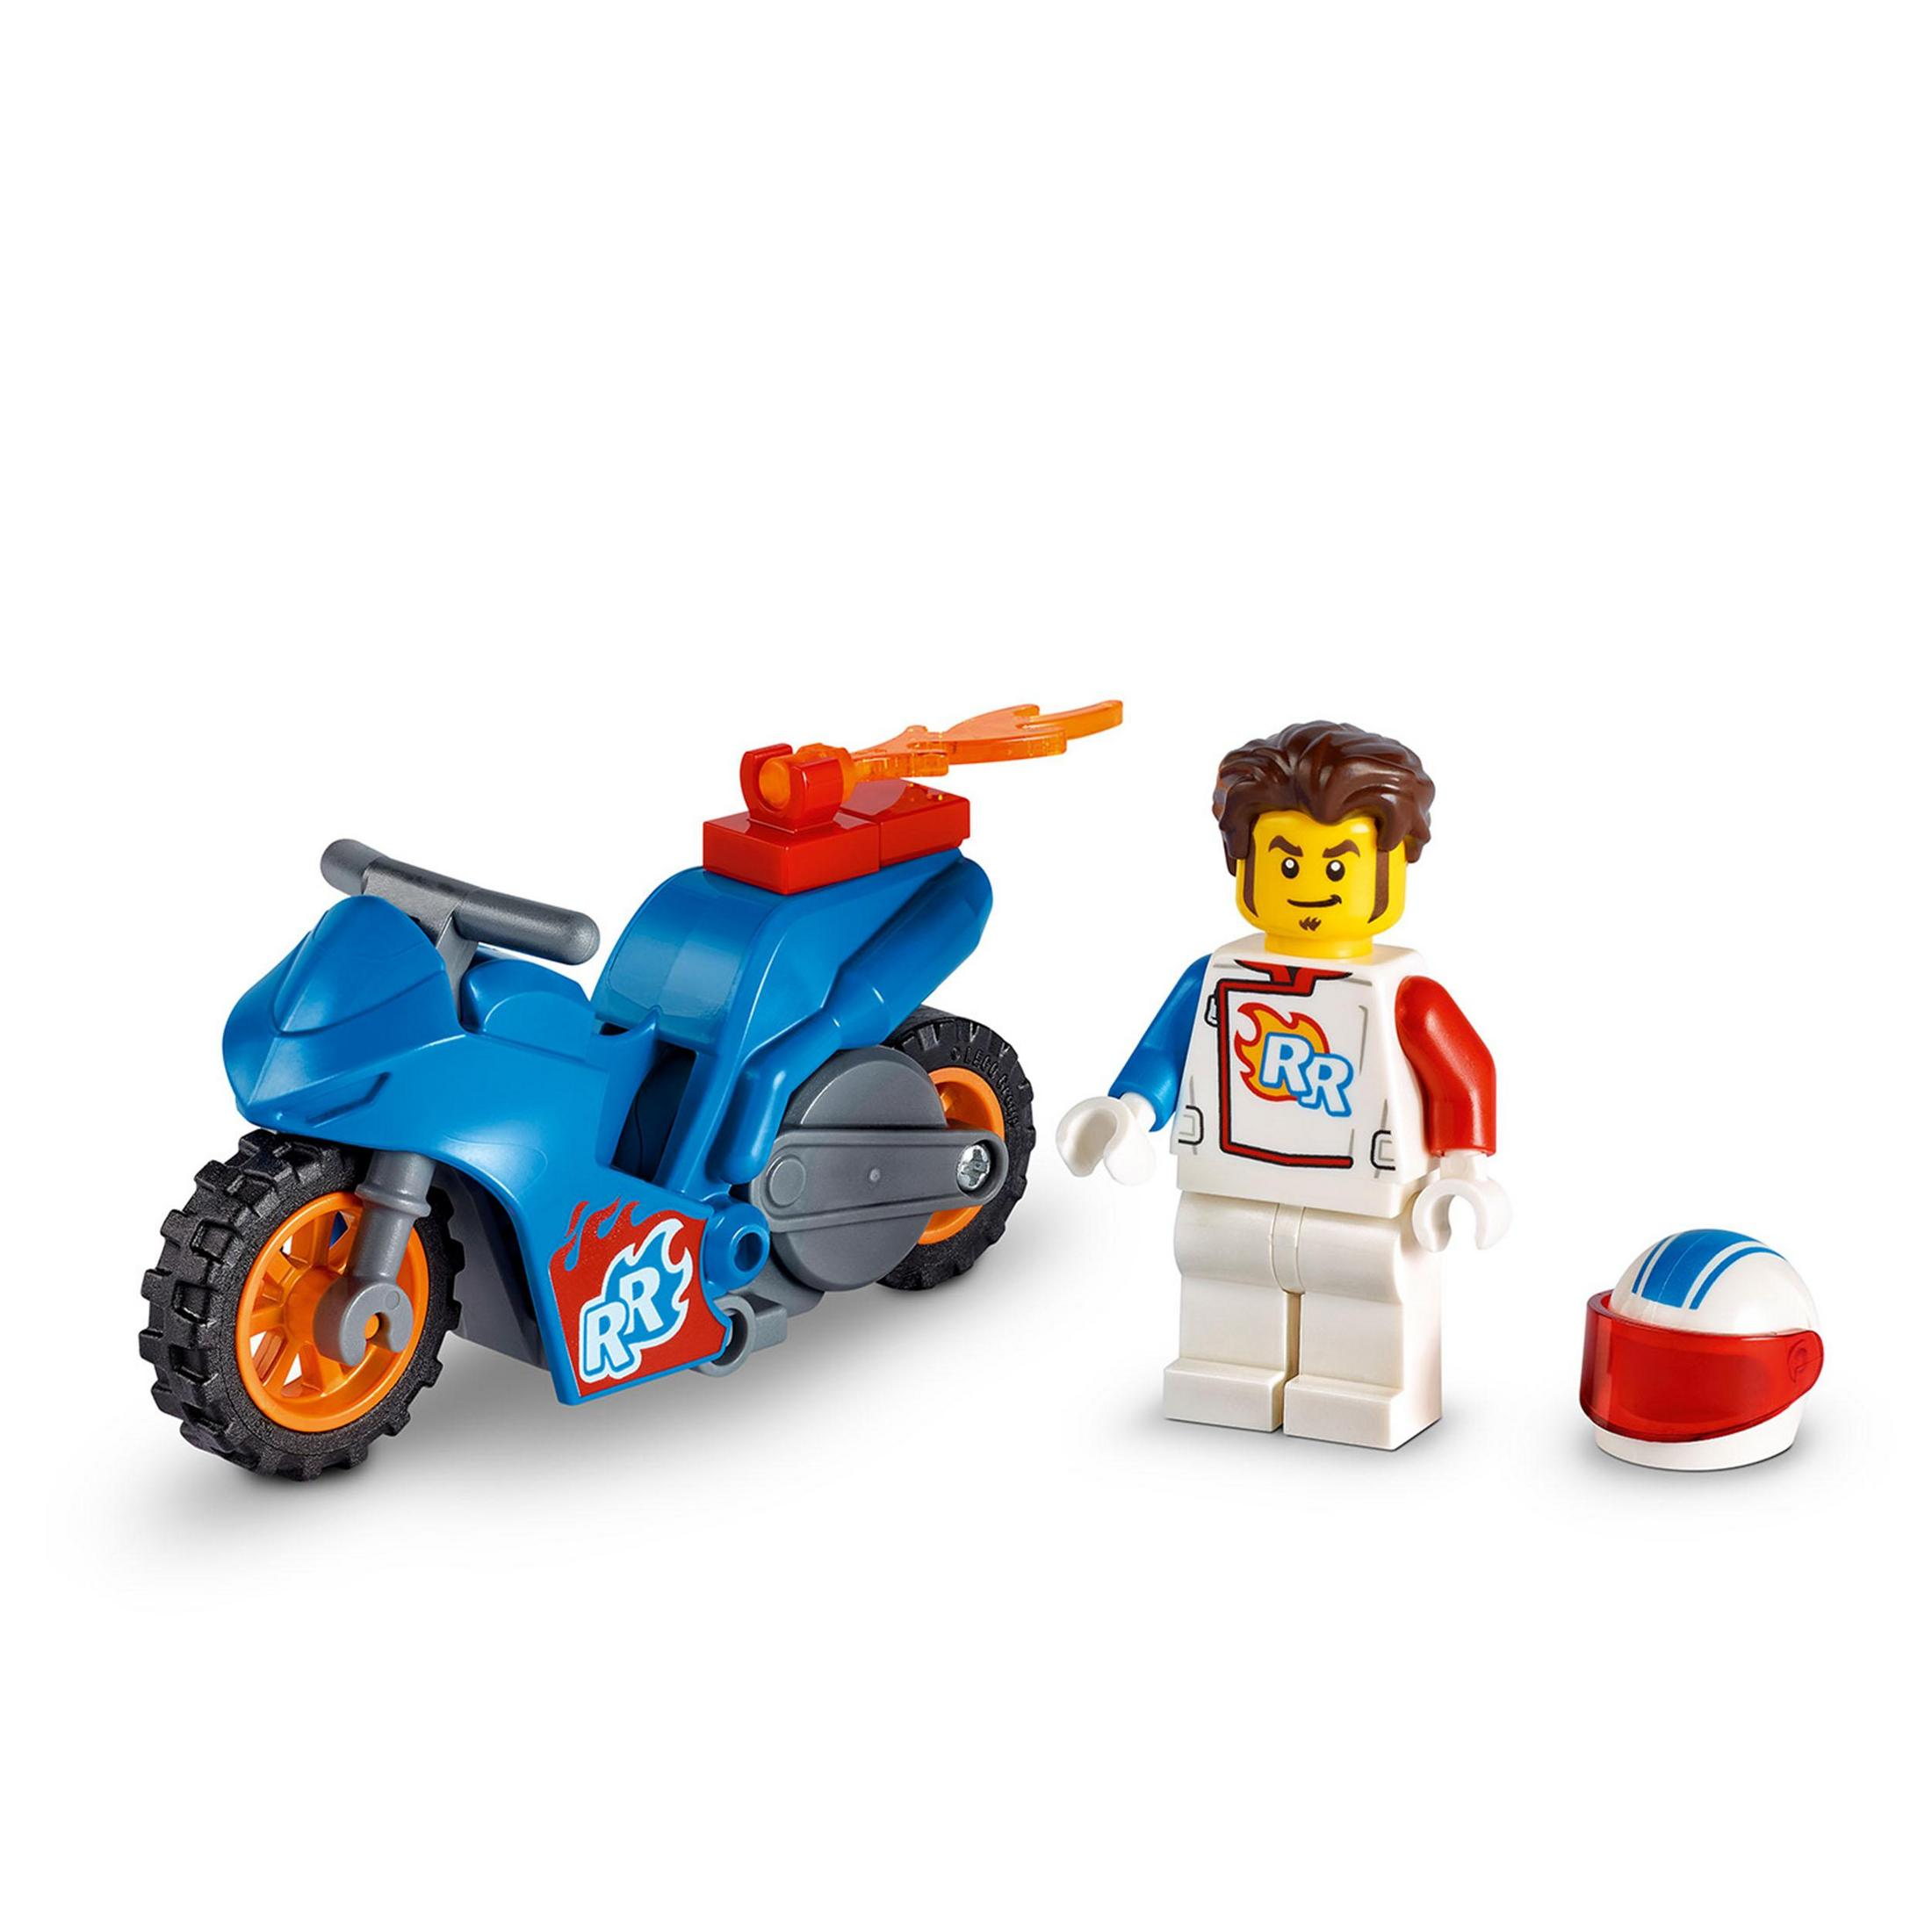 LEGO 60298 RAKETEN-STUNTBIKE Bausatz, Mehrfarbig